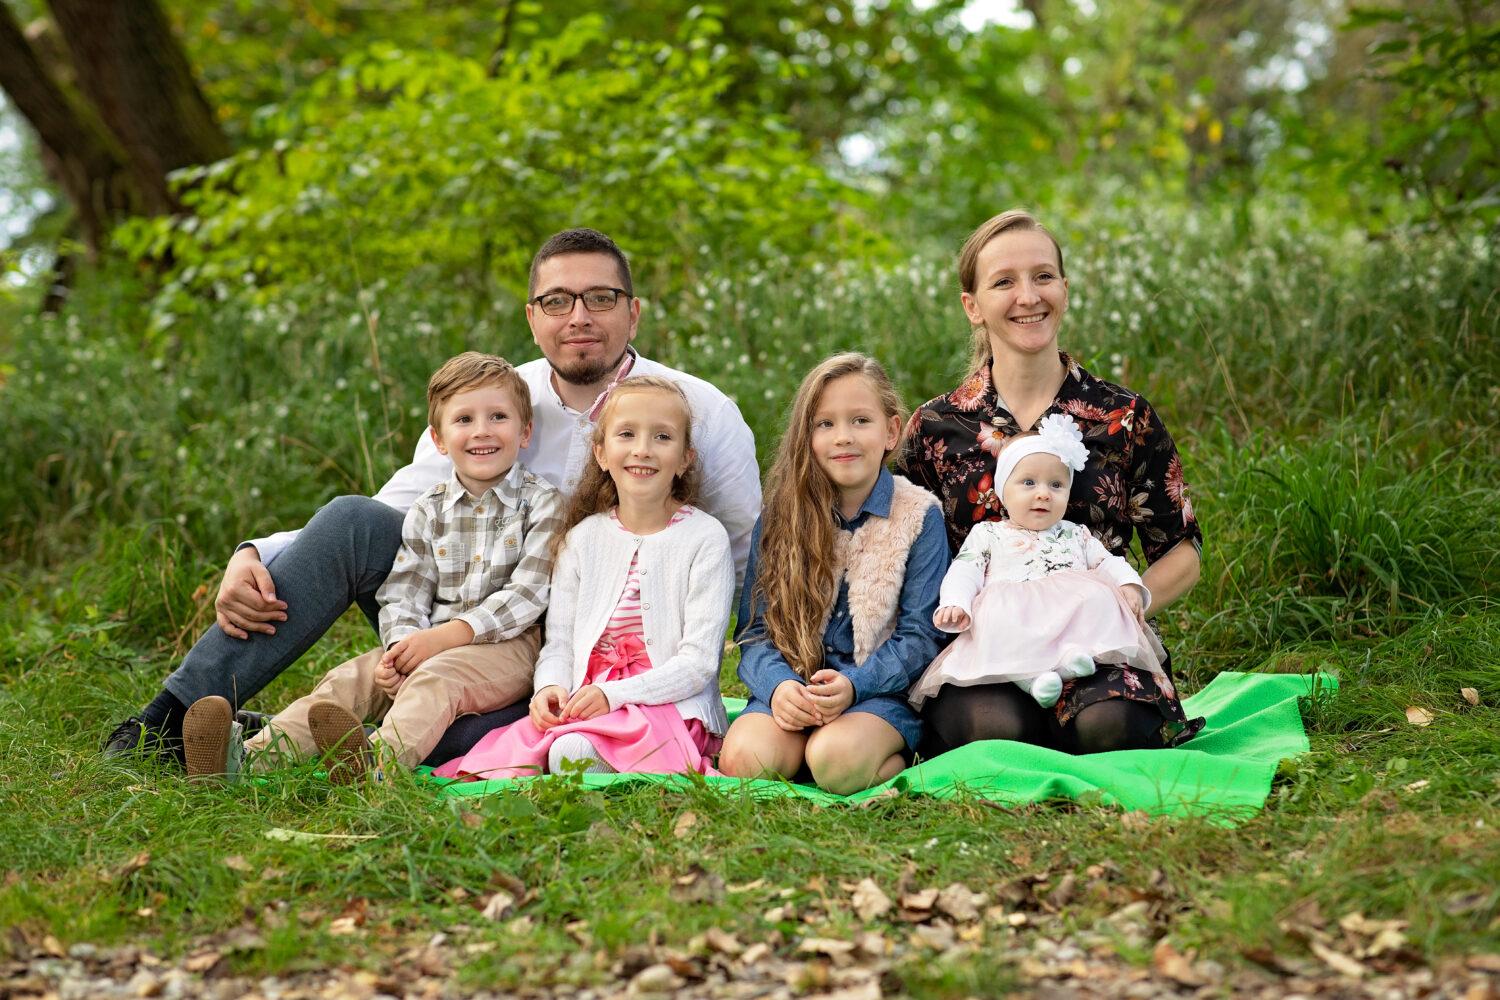 Janka Mikelová z trenčianskeho hospicu:Každý ďalší deň s mojím mužom a mojimi deťmi je privilégium